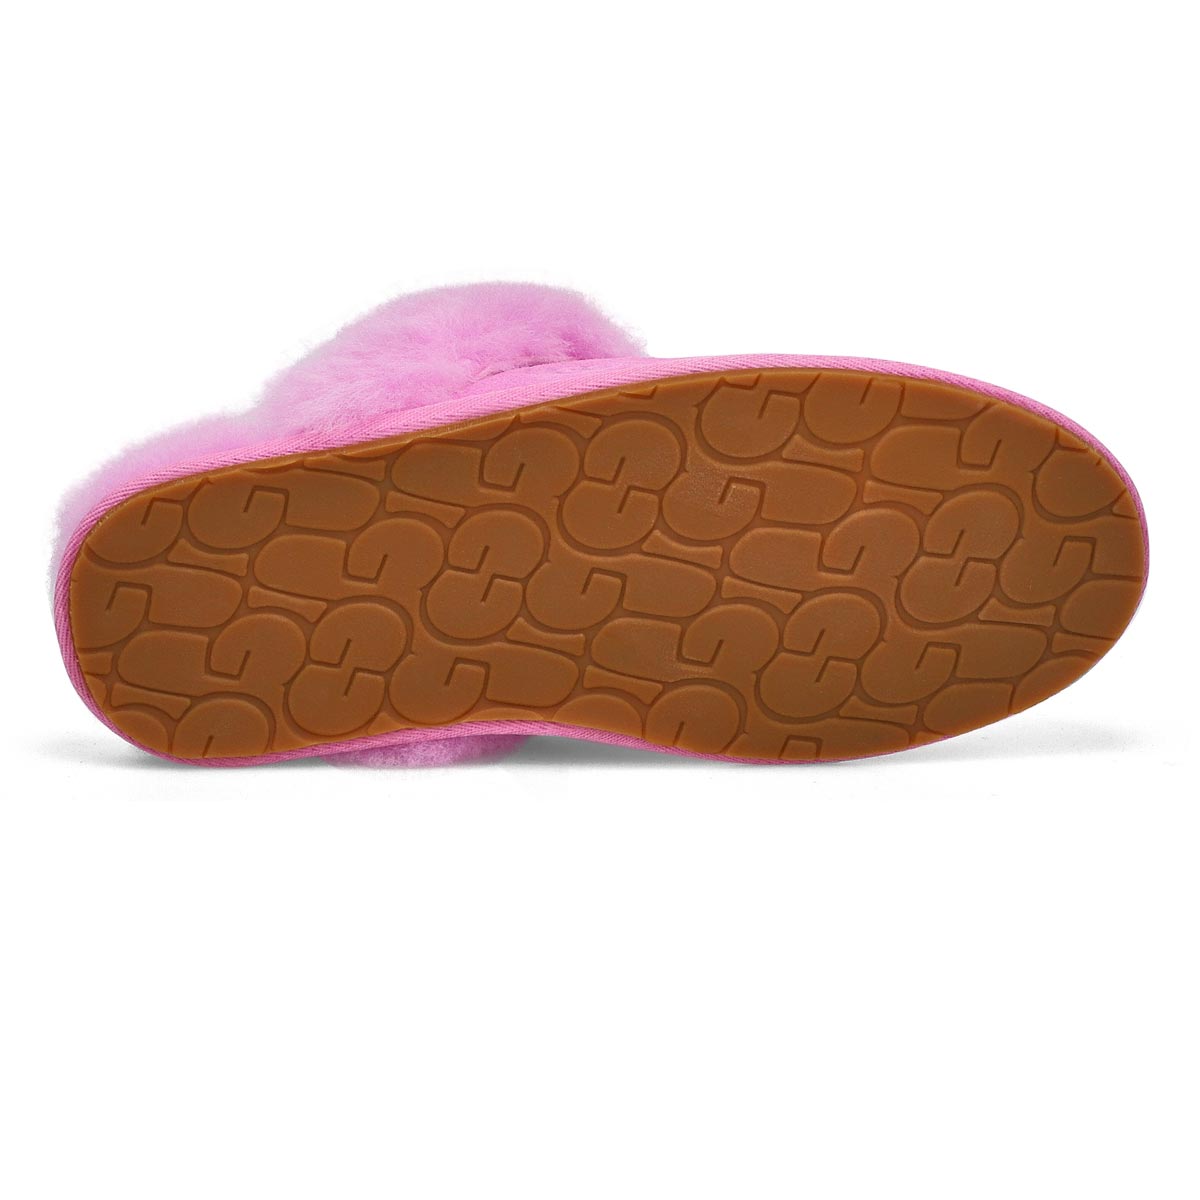 UGG Women's Scuffette II Slipper - Chestnut | SoftMoc.com